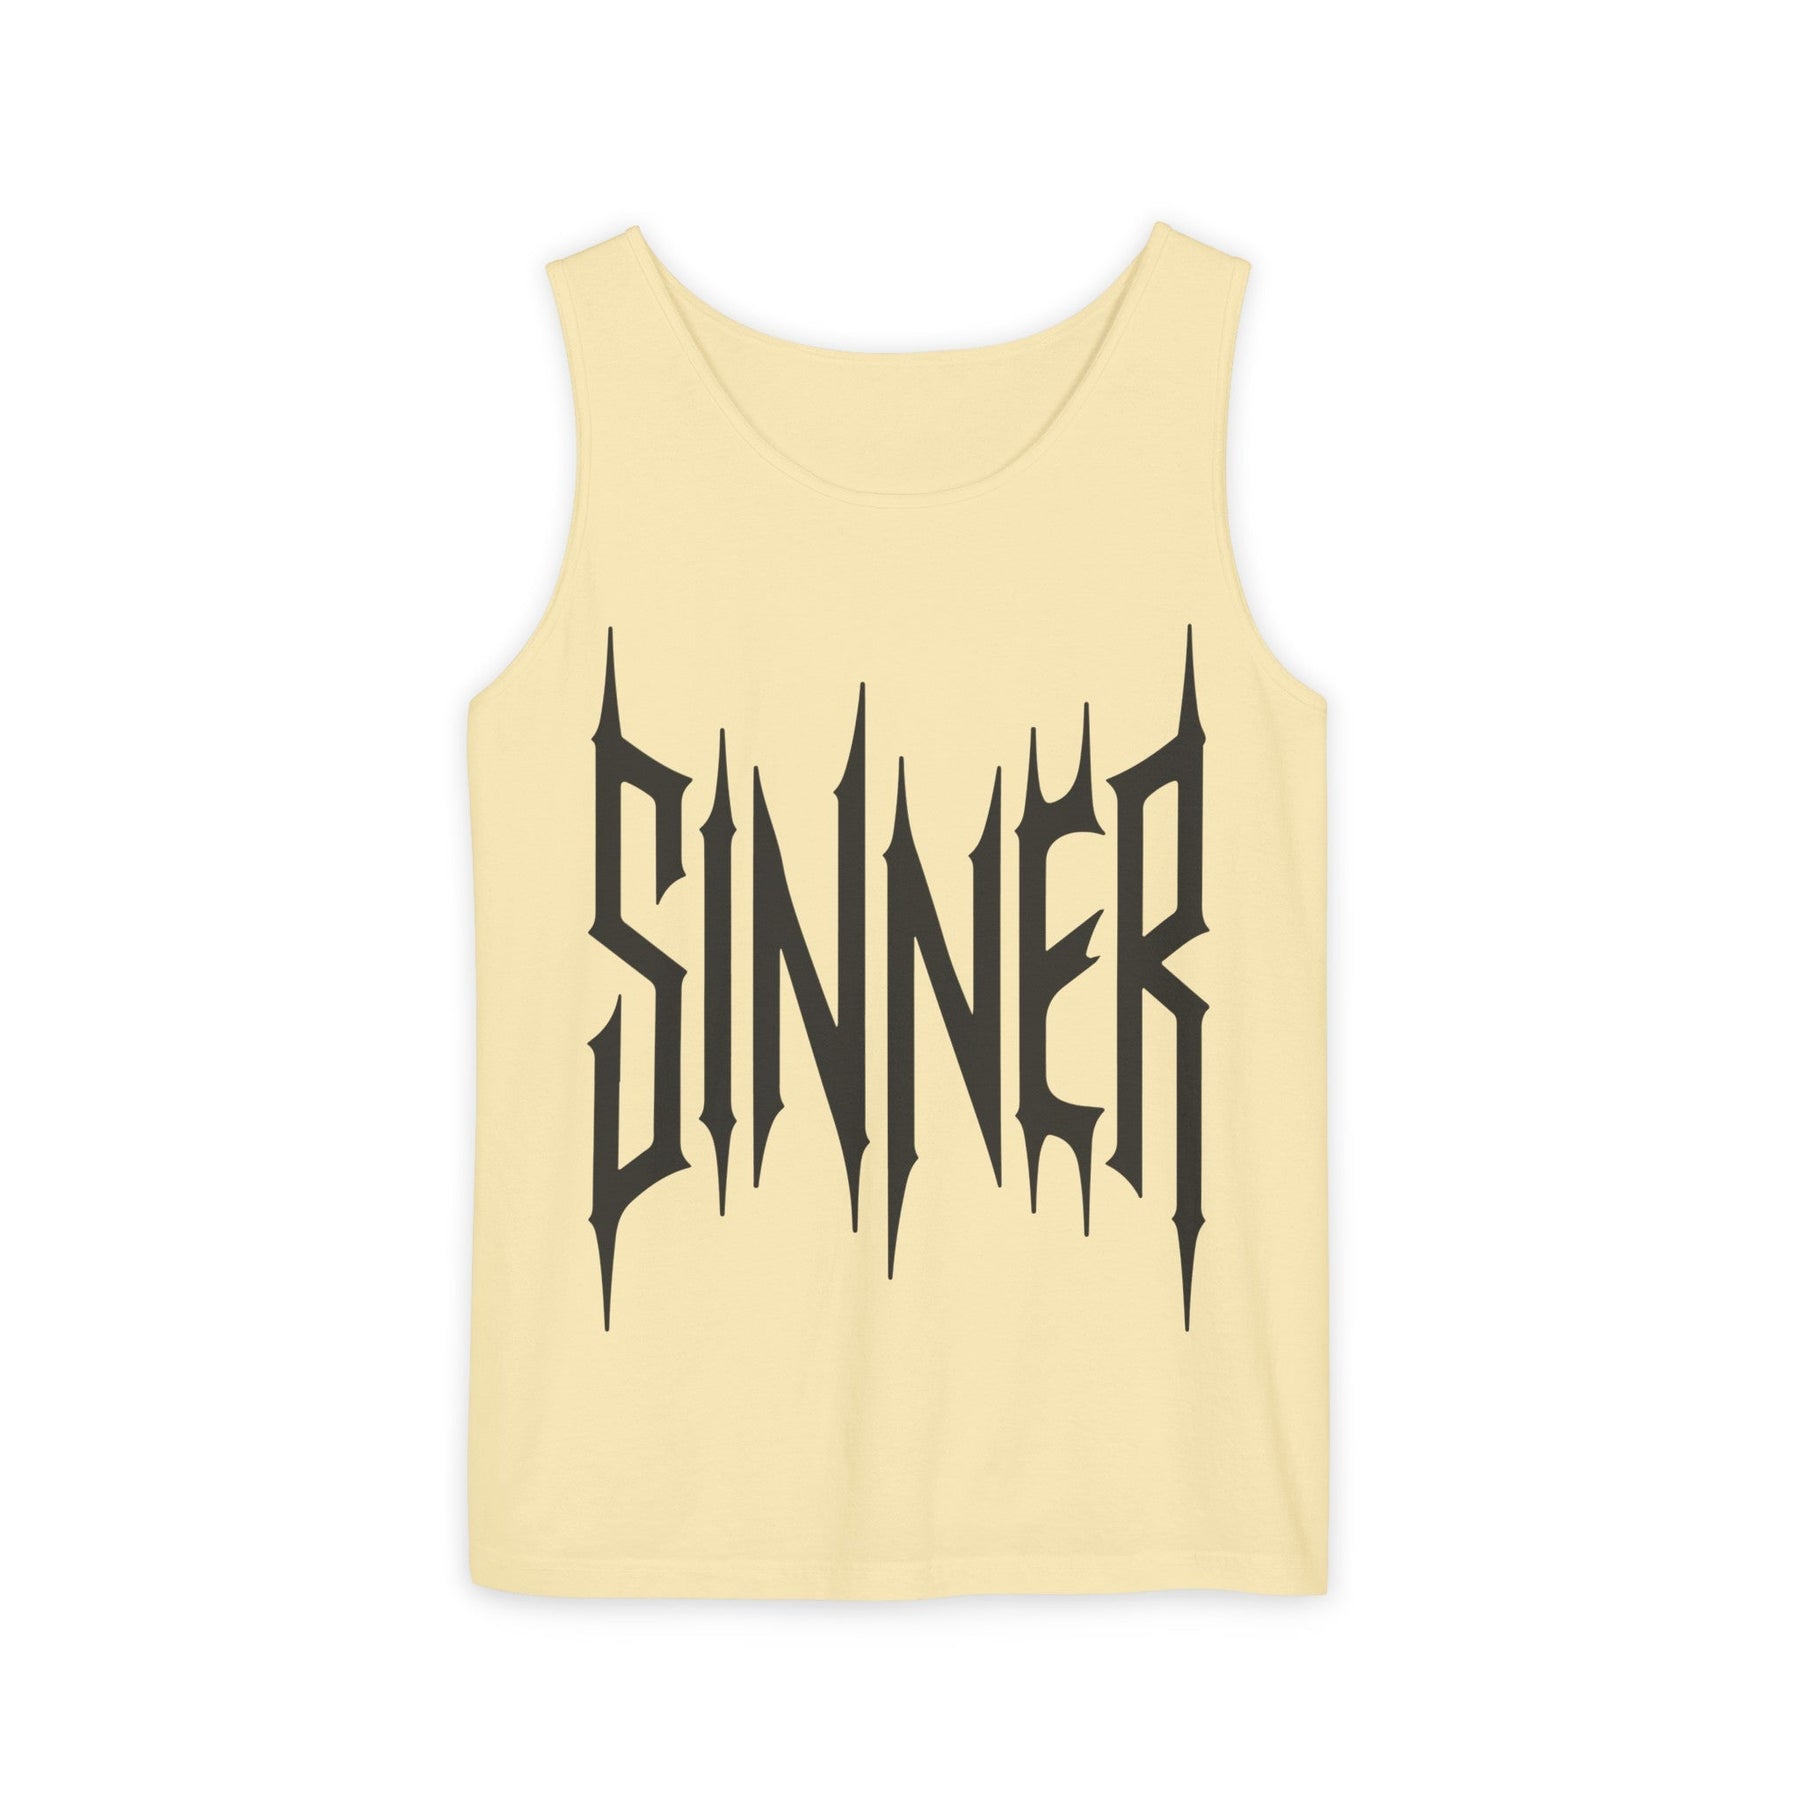 Sinner Unisex Tank - Goth Cloth Co.Tank Top33660183151079117710